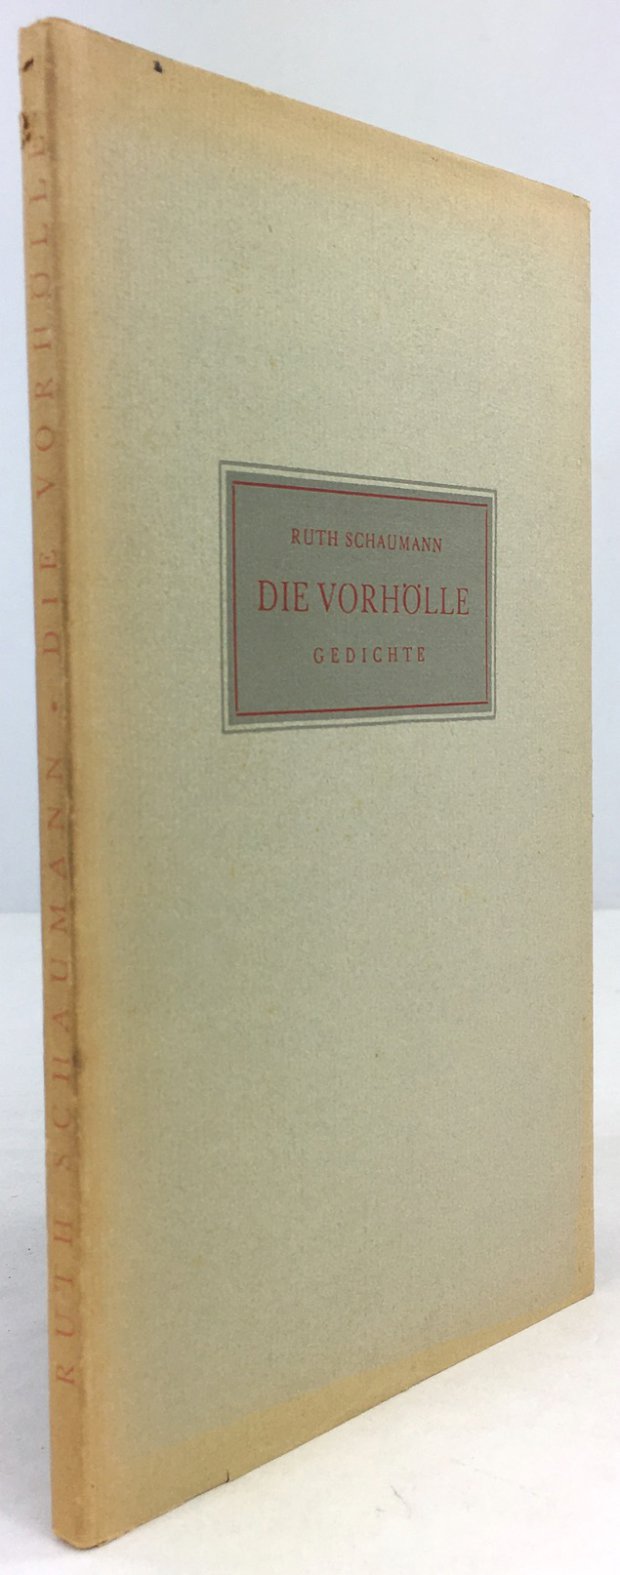 Abbildung von "Die Vorhölle. Gedichte."